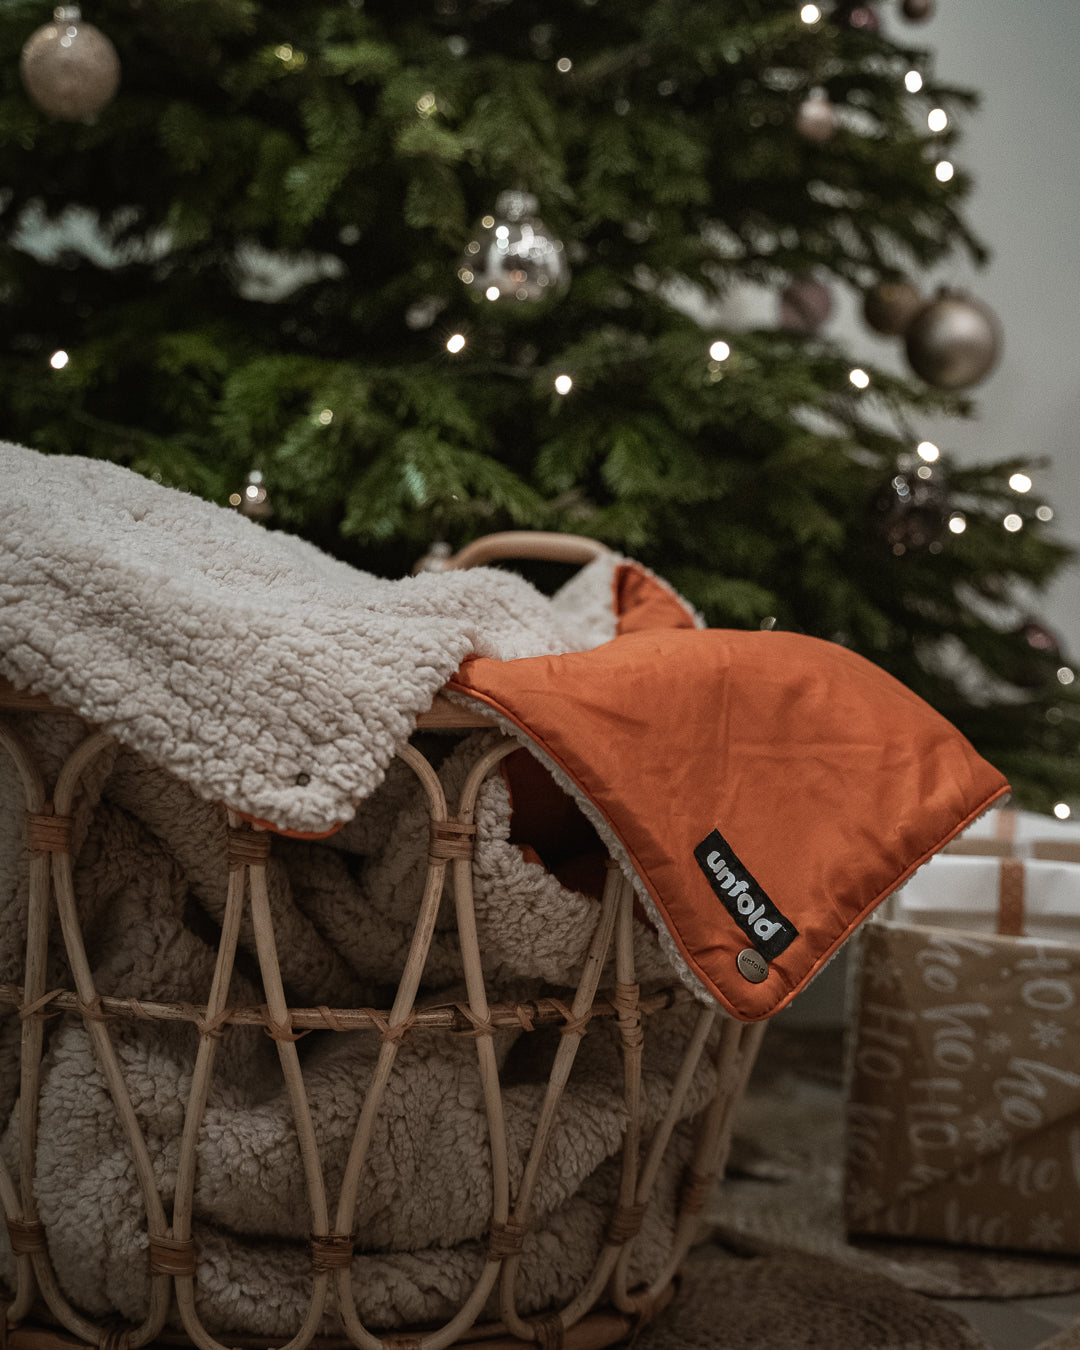 kuschelige Decke in Korb vor Weihnachtsbaum